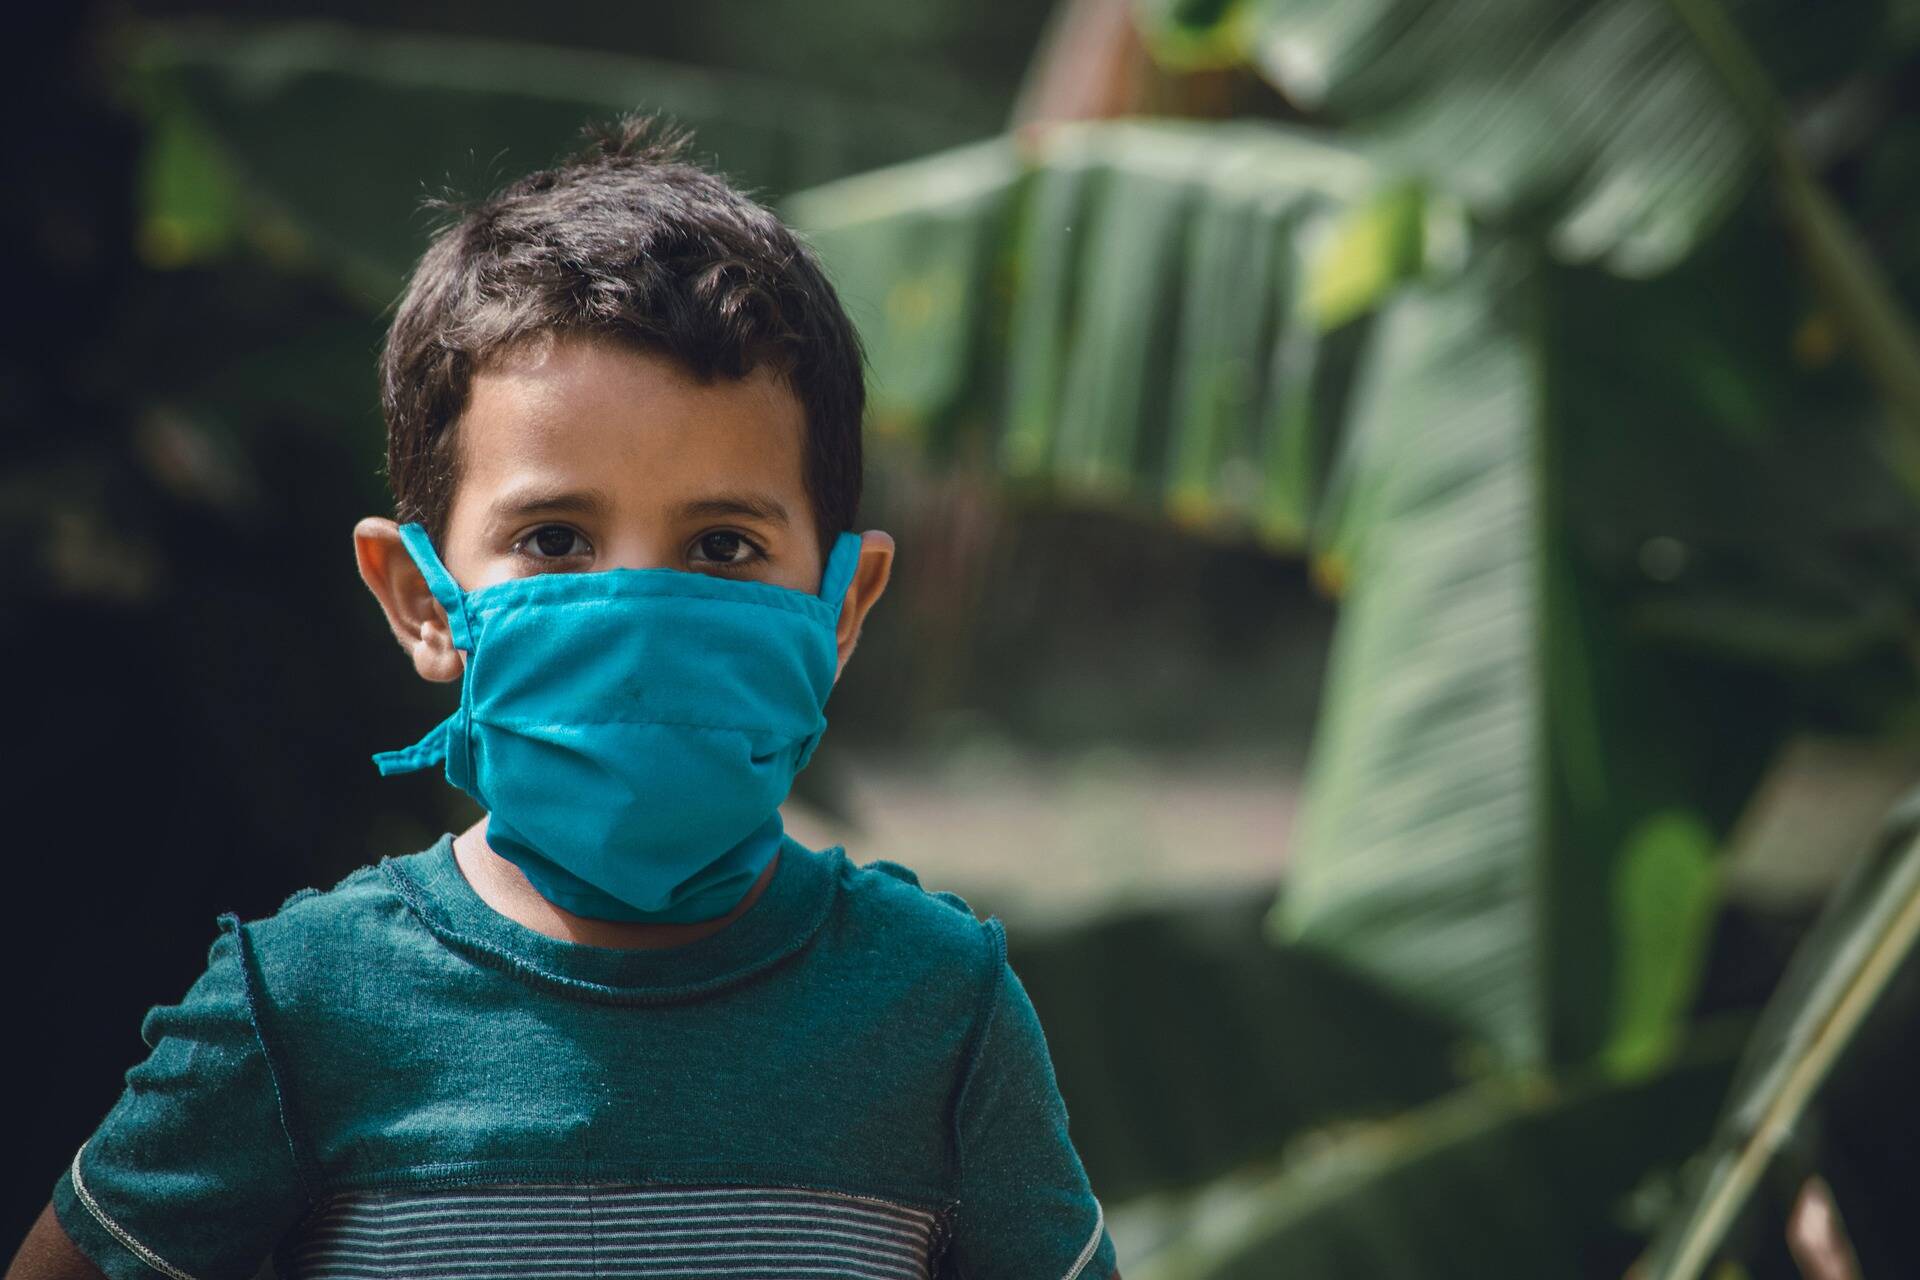 Coronavírus: dicas para fazer uma criança usar máscara